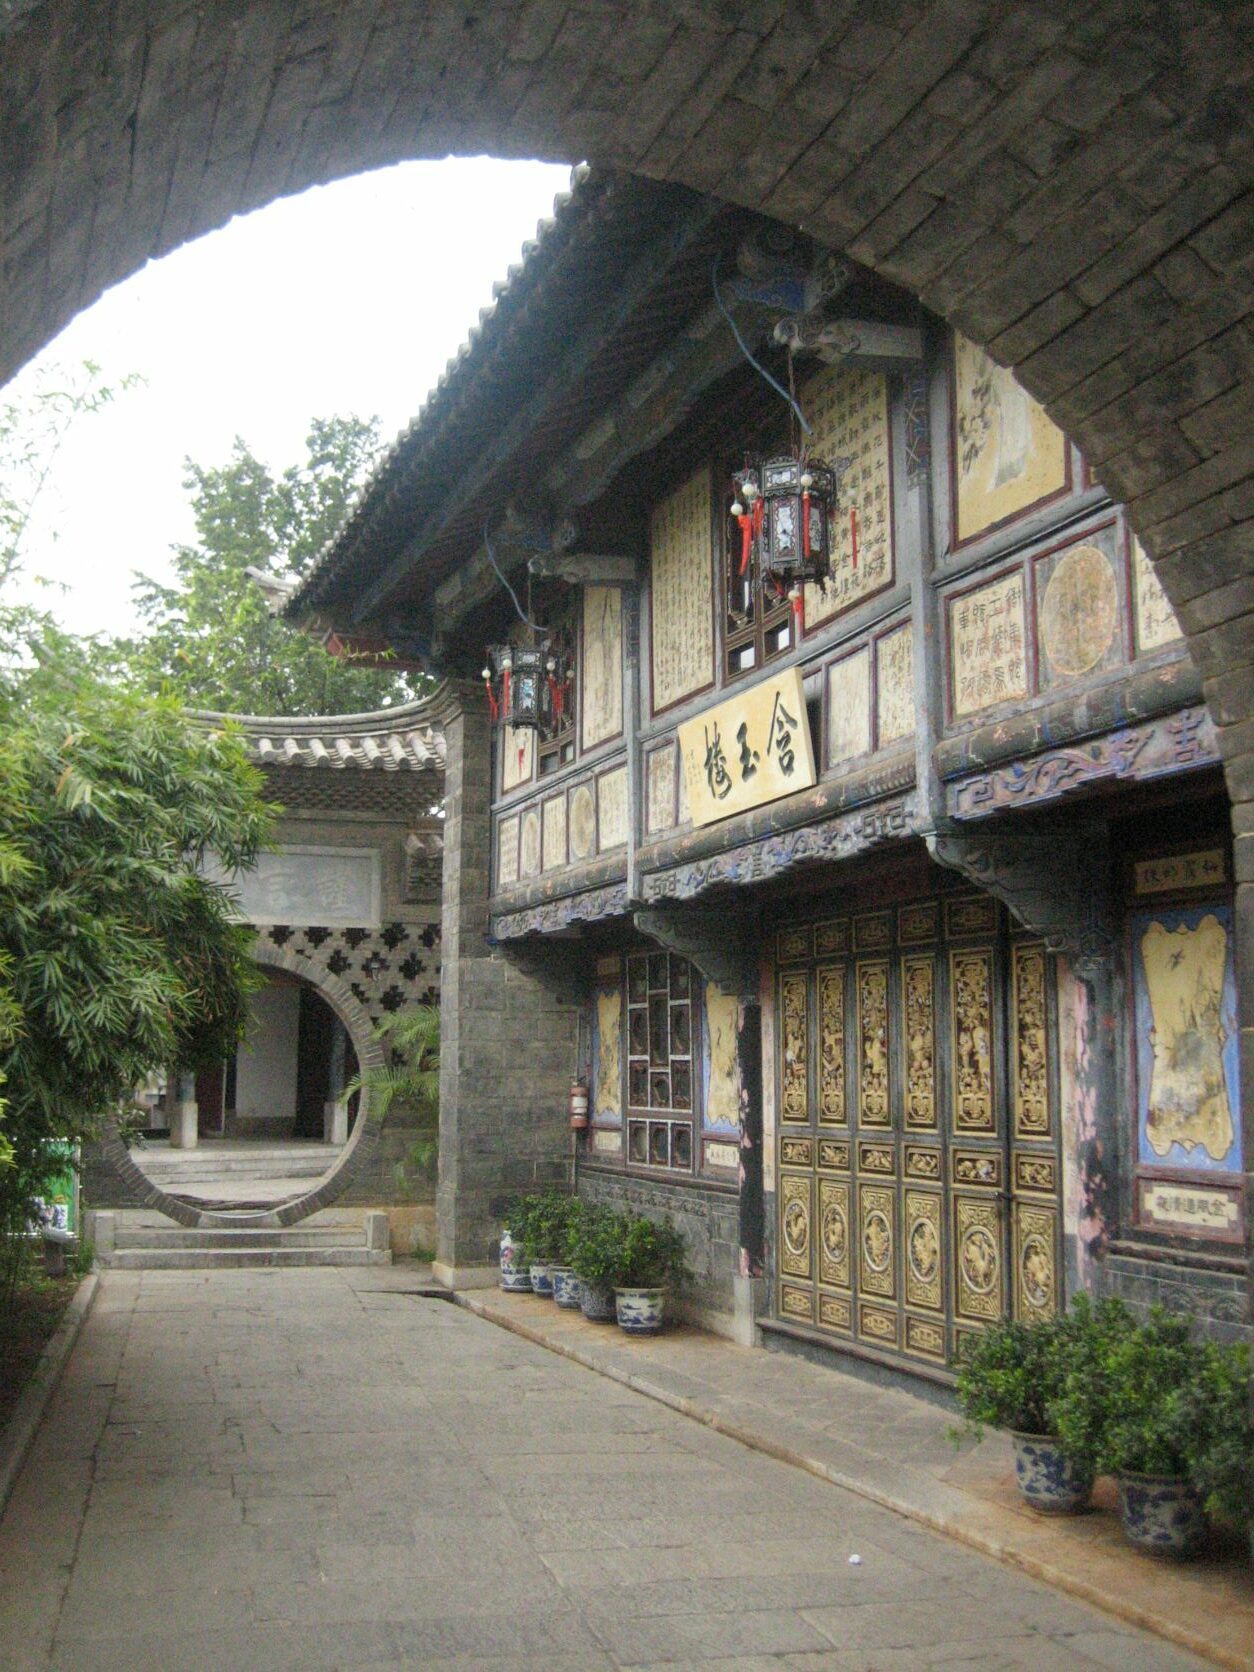 Les Jardins de la Famille Zhu (1) – Les carnets de voyage de Jean-Paul C